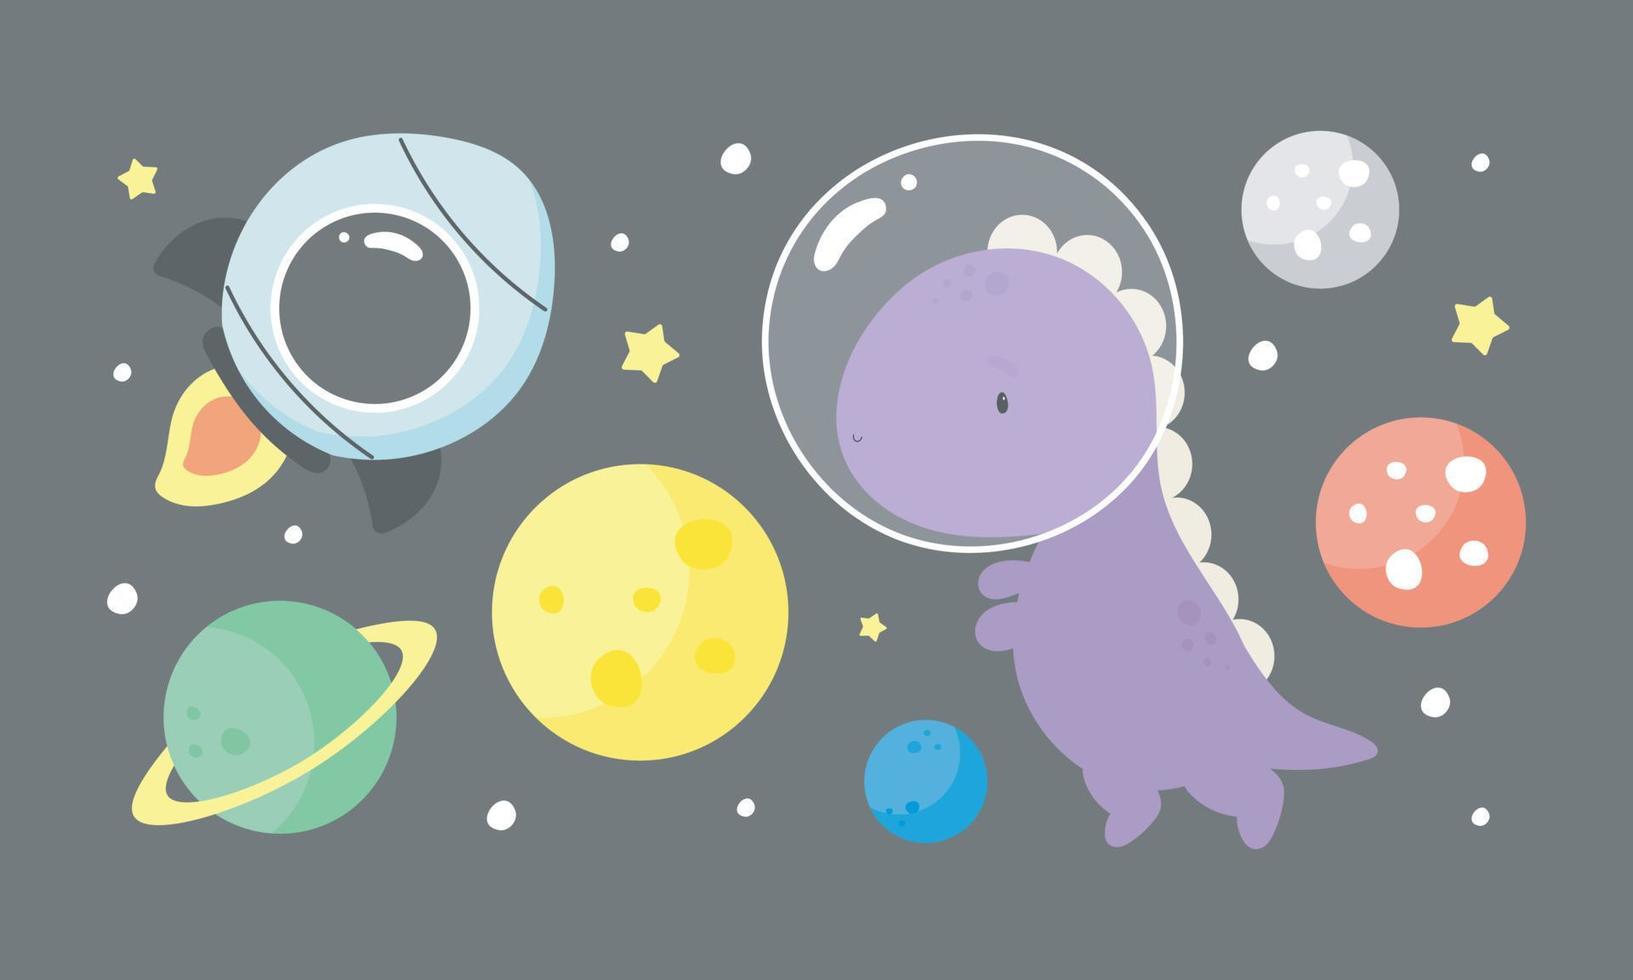 rymdsamling. vektor illustration i tecknad stil. dinosauriekosmonaut, planeter, rymdskepp, stjärnor. för barnprylar, kort, affischer, banderoller, barnböcker och tryck för kläder, t-shirt, ikoner.